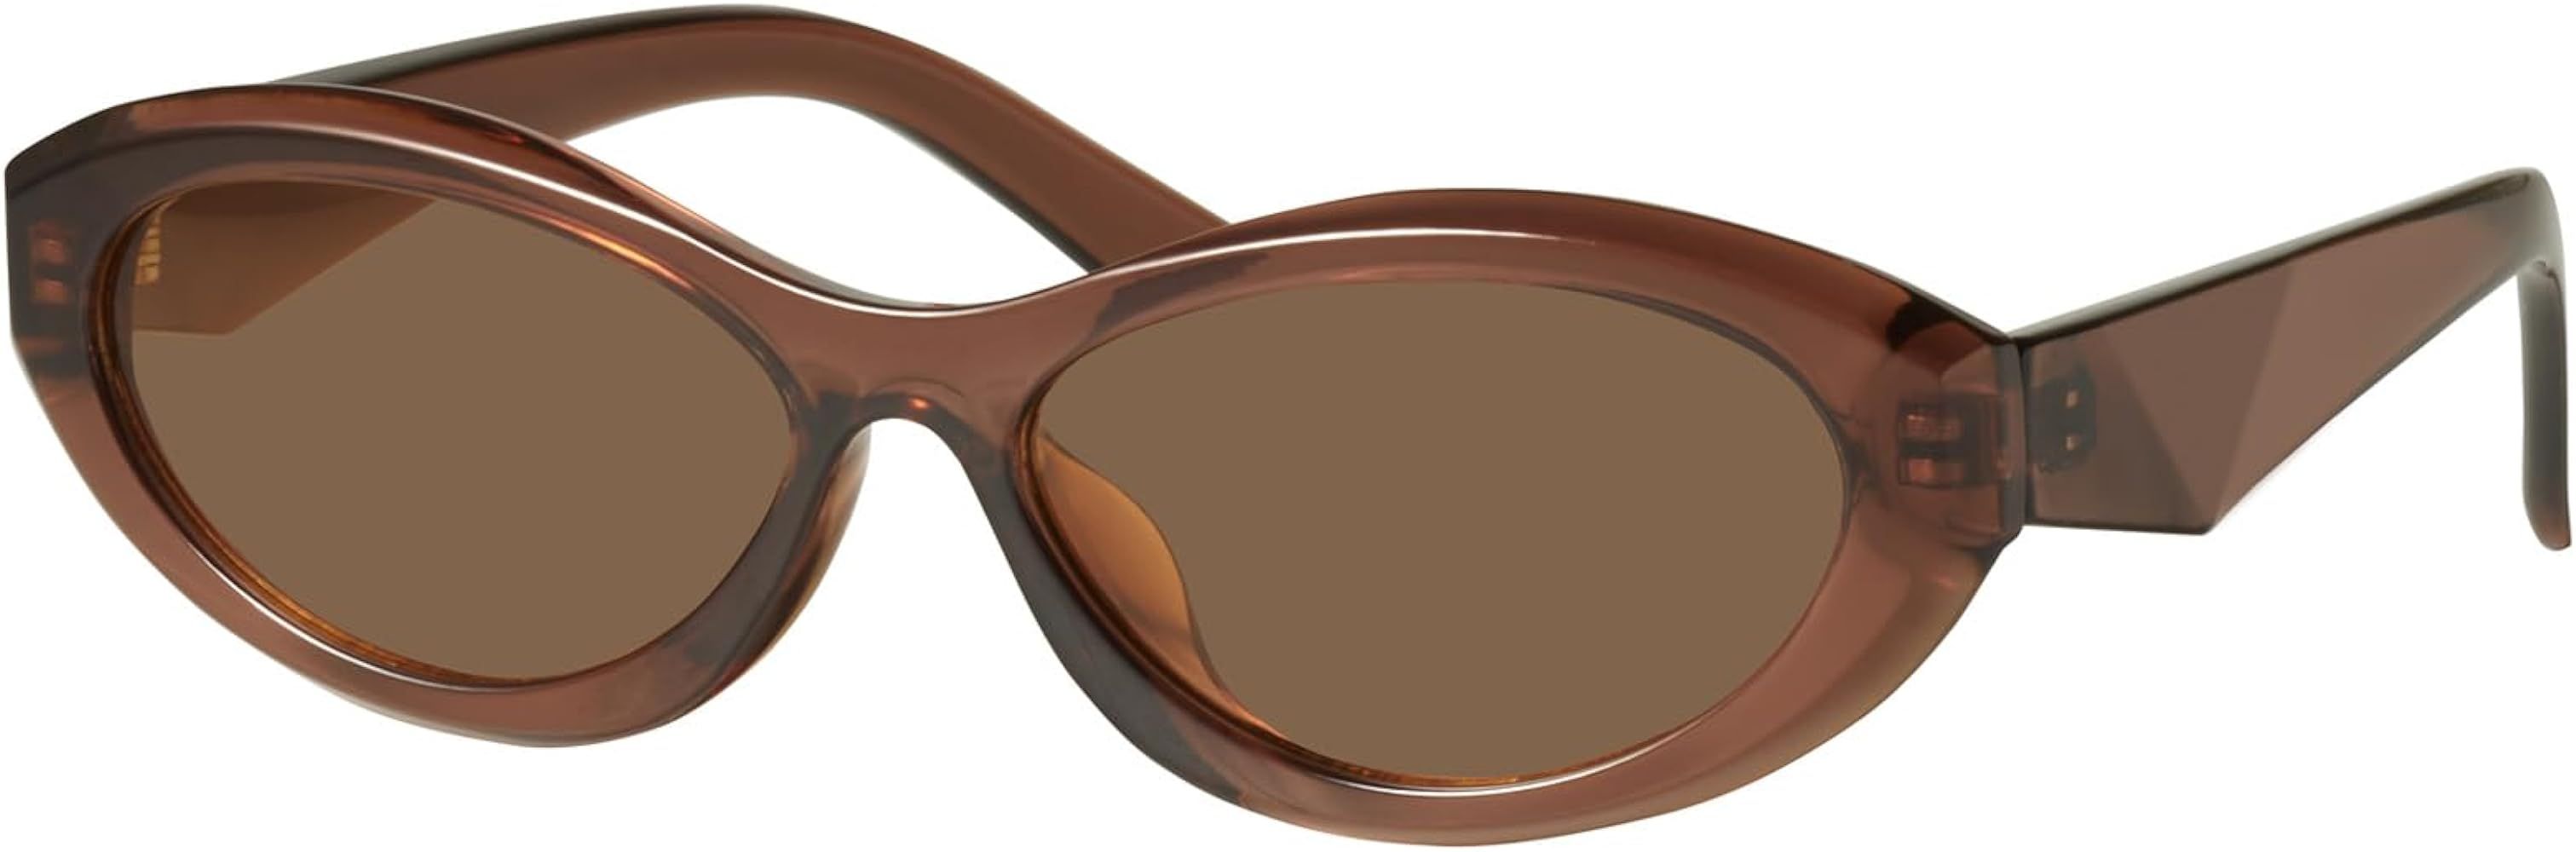 mosanana Retro Oval Sunglasses for Women Vintage 90s Cat Eye Narrow Skinny Sunnies MS52372 | Amazon (US)